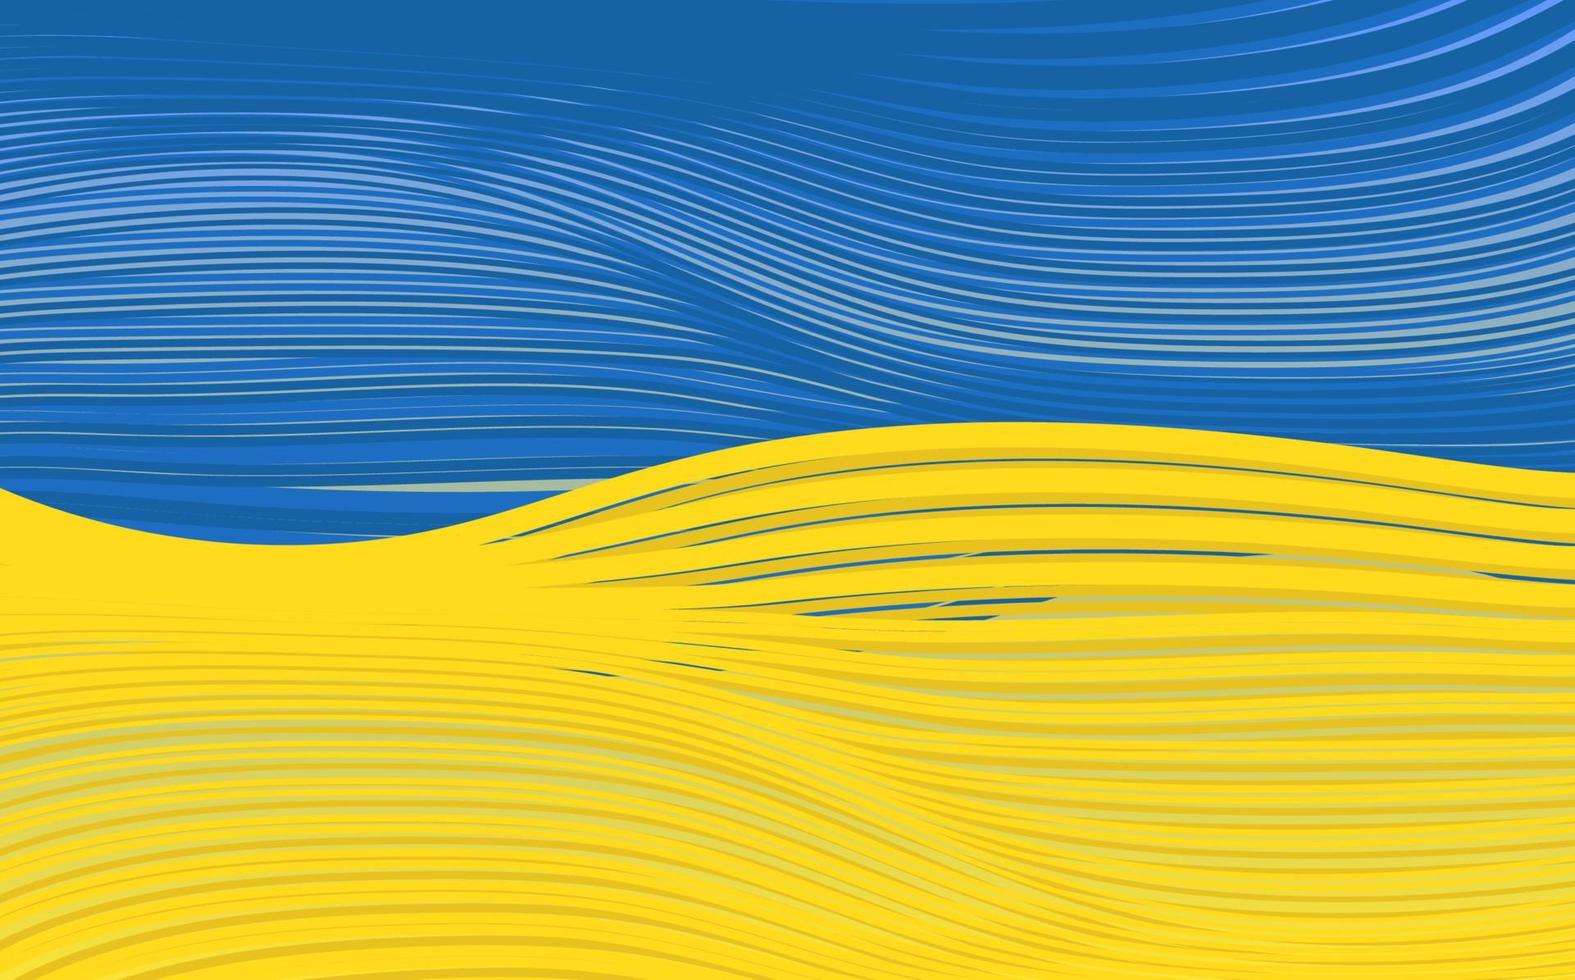 golvenpatroon met de nationale vlag van oekraïne, schilderij gestreepte vlag van oekraïne. symbool, poster, banner van de nationale vlag. stijl aquarel tekenen. vector blauw gele achtergrond